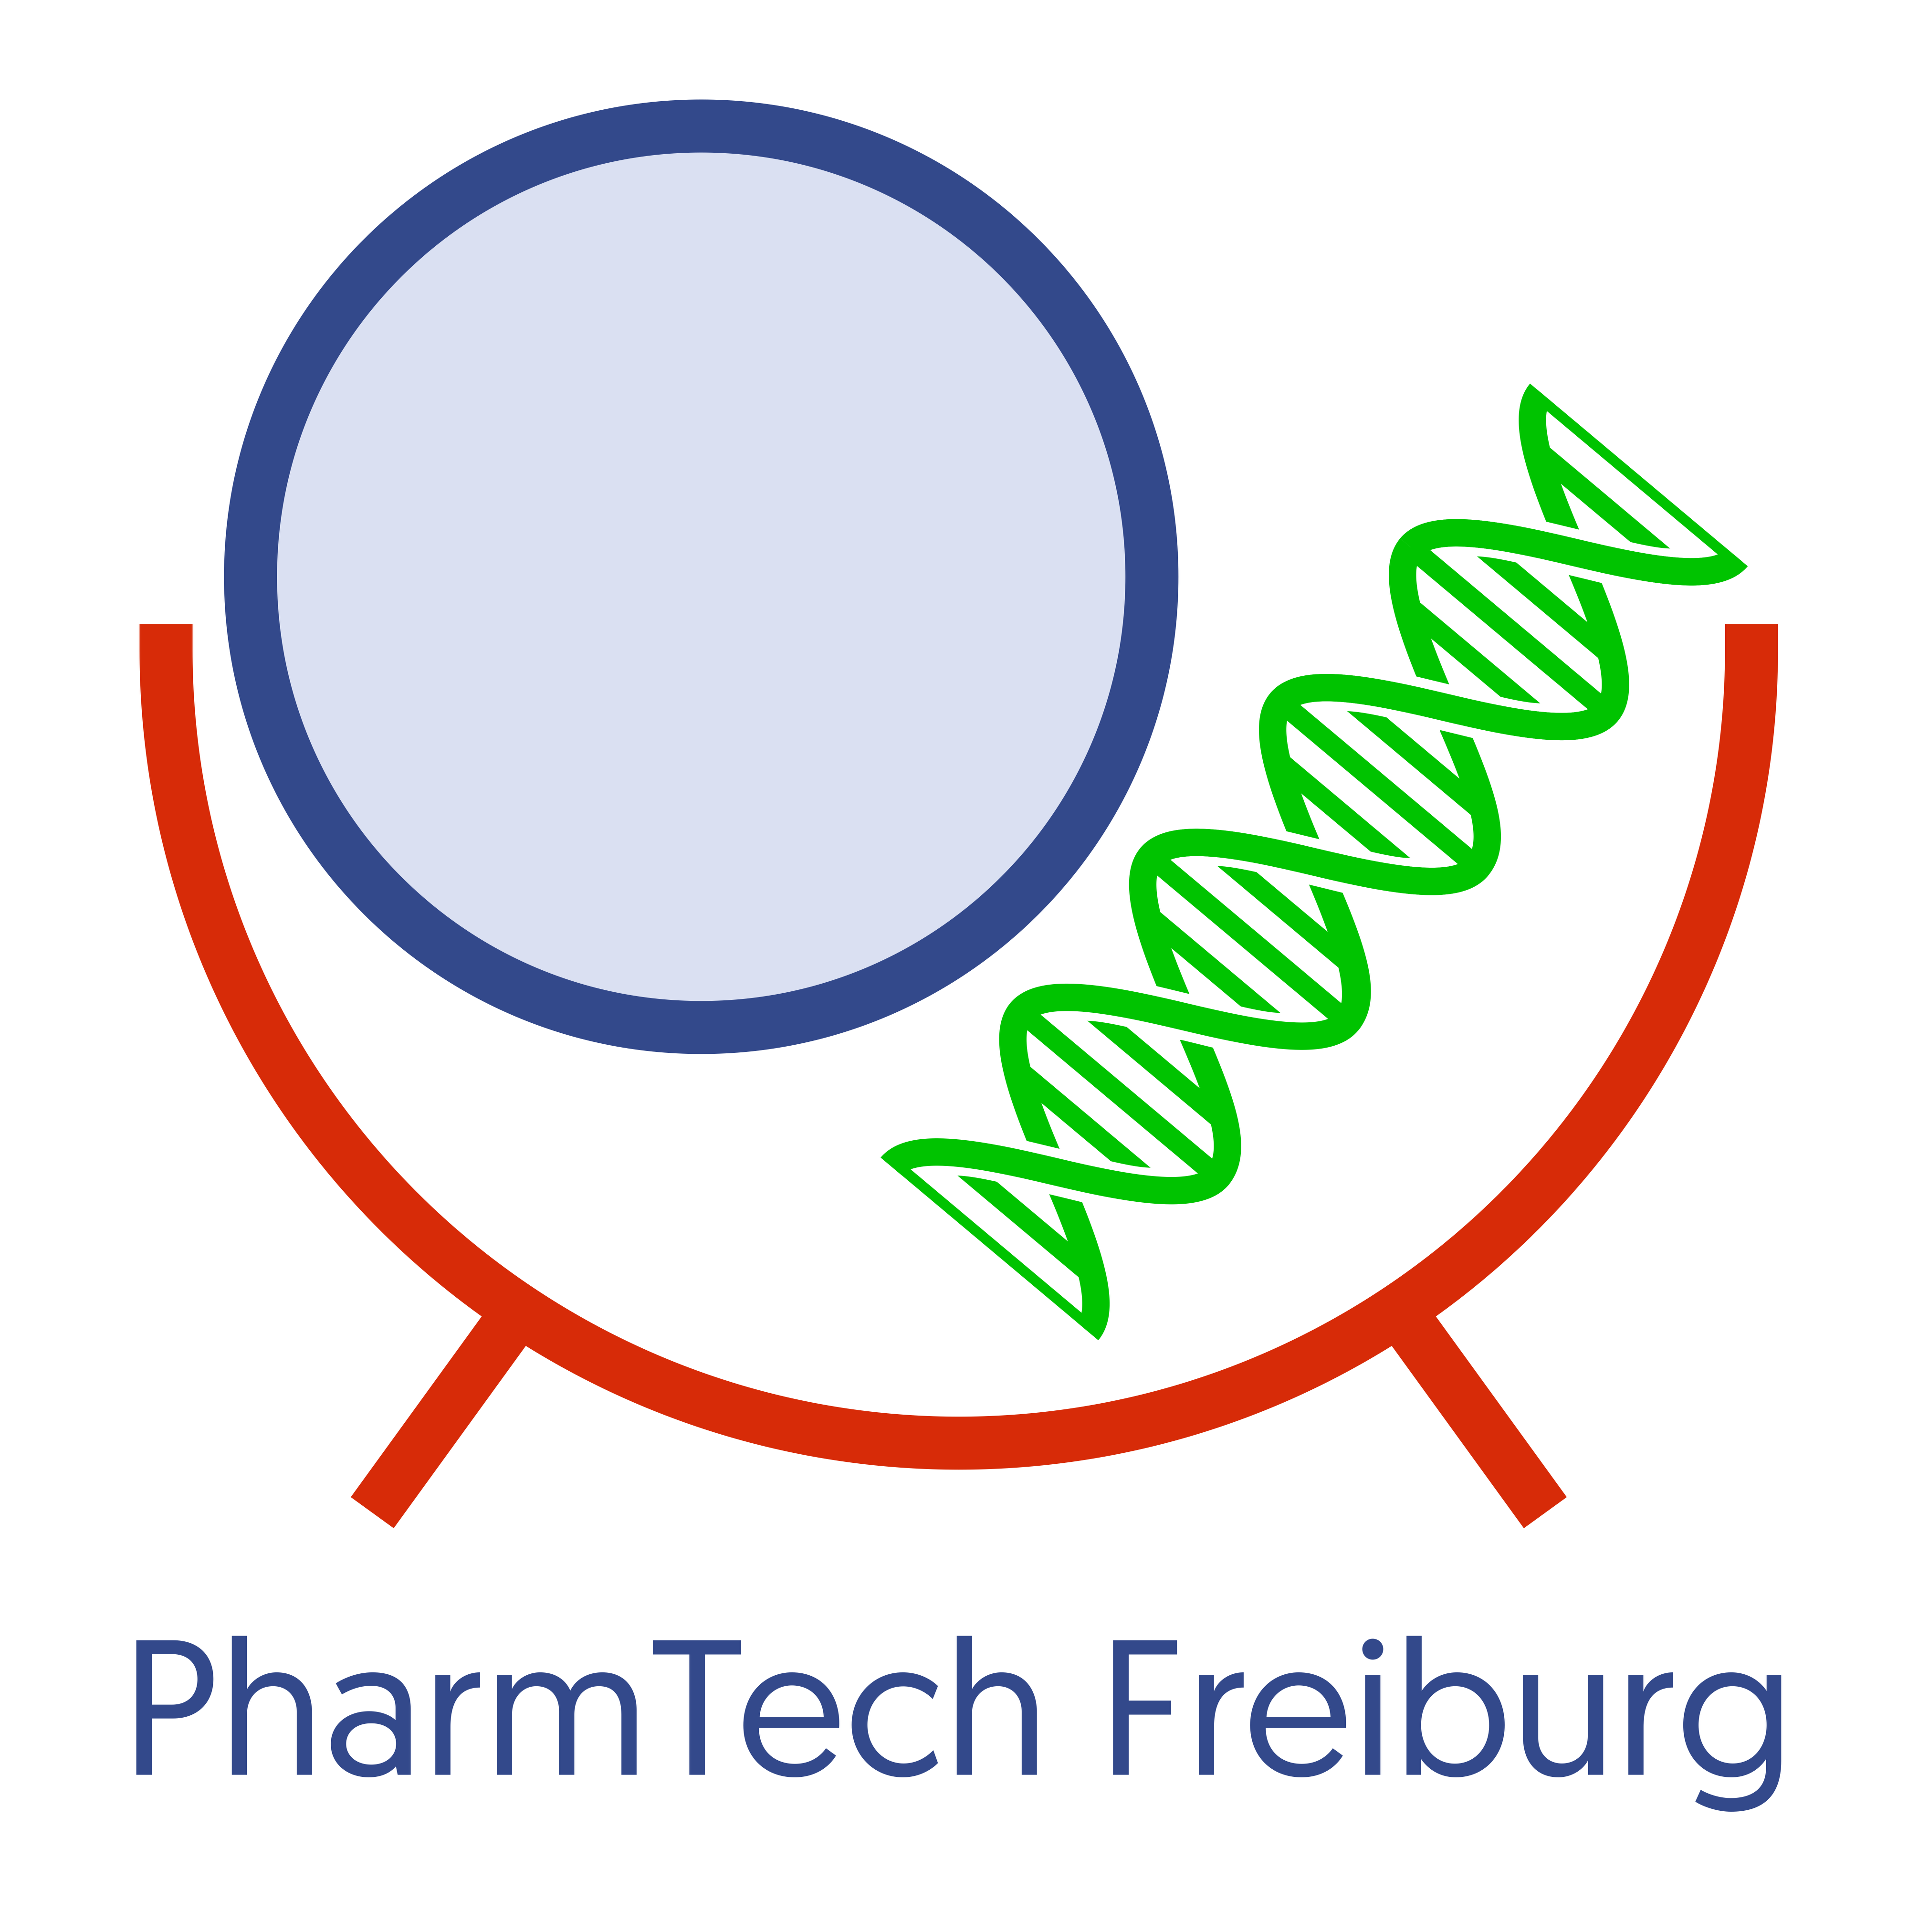 PharmTech Freiburg